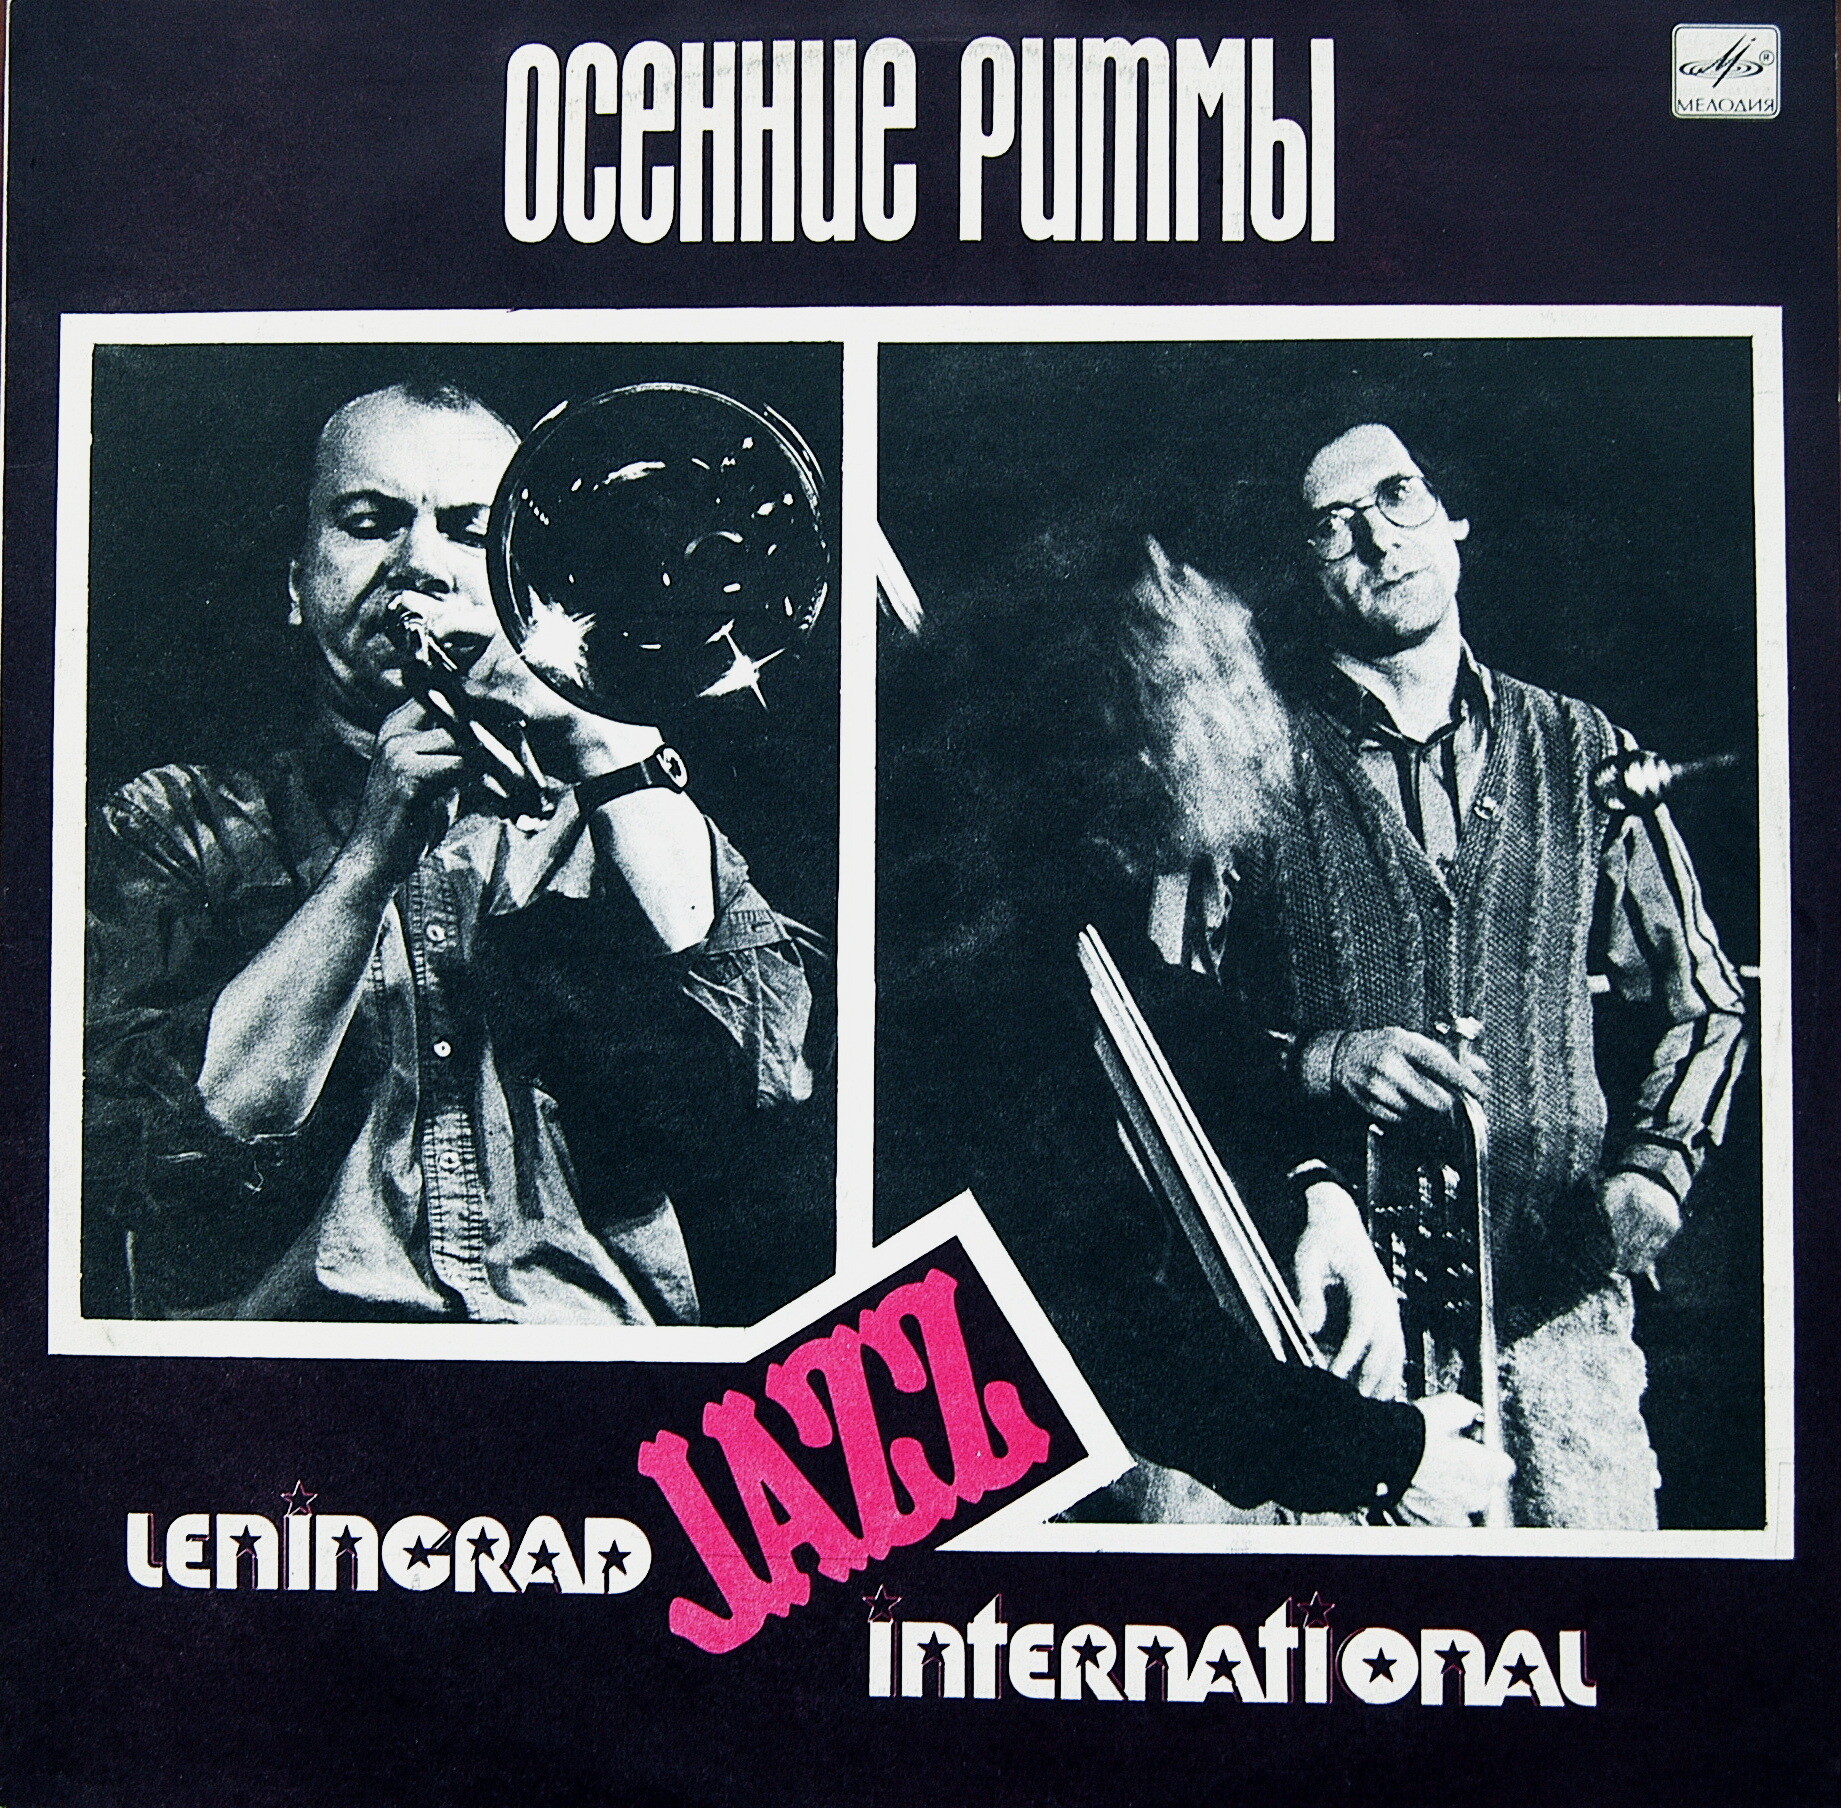 ОСЕННИЕ РИТМЫ-89. (Ленинградский фестиваль джазовой музыки). «Leningrad Jazz International» (1)